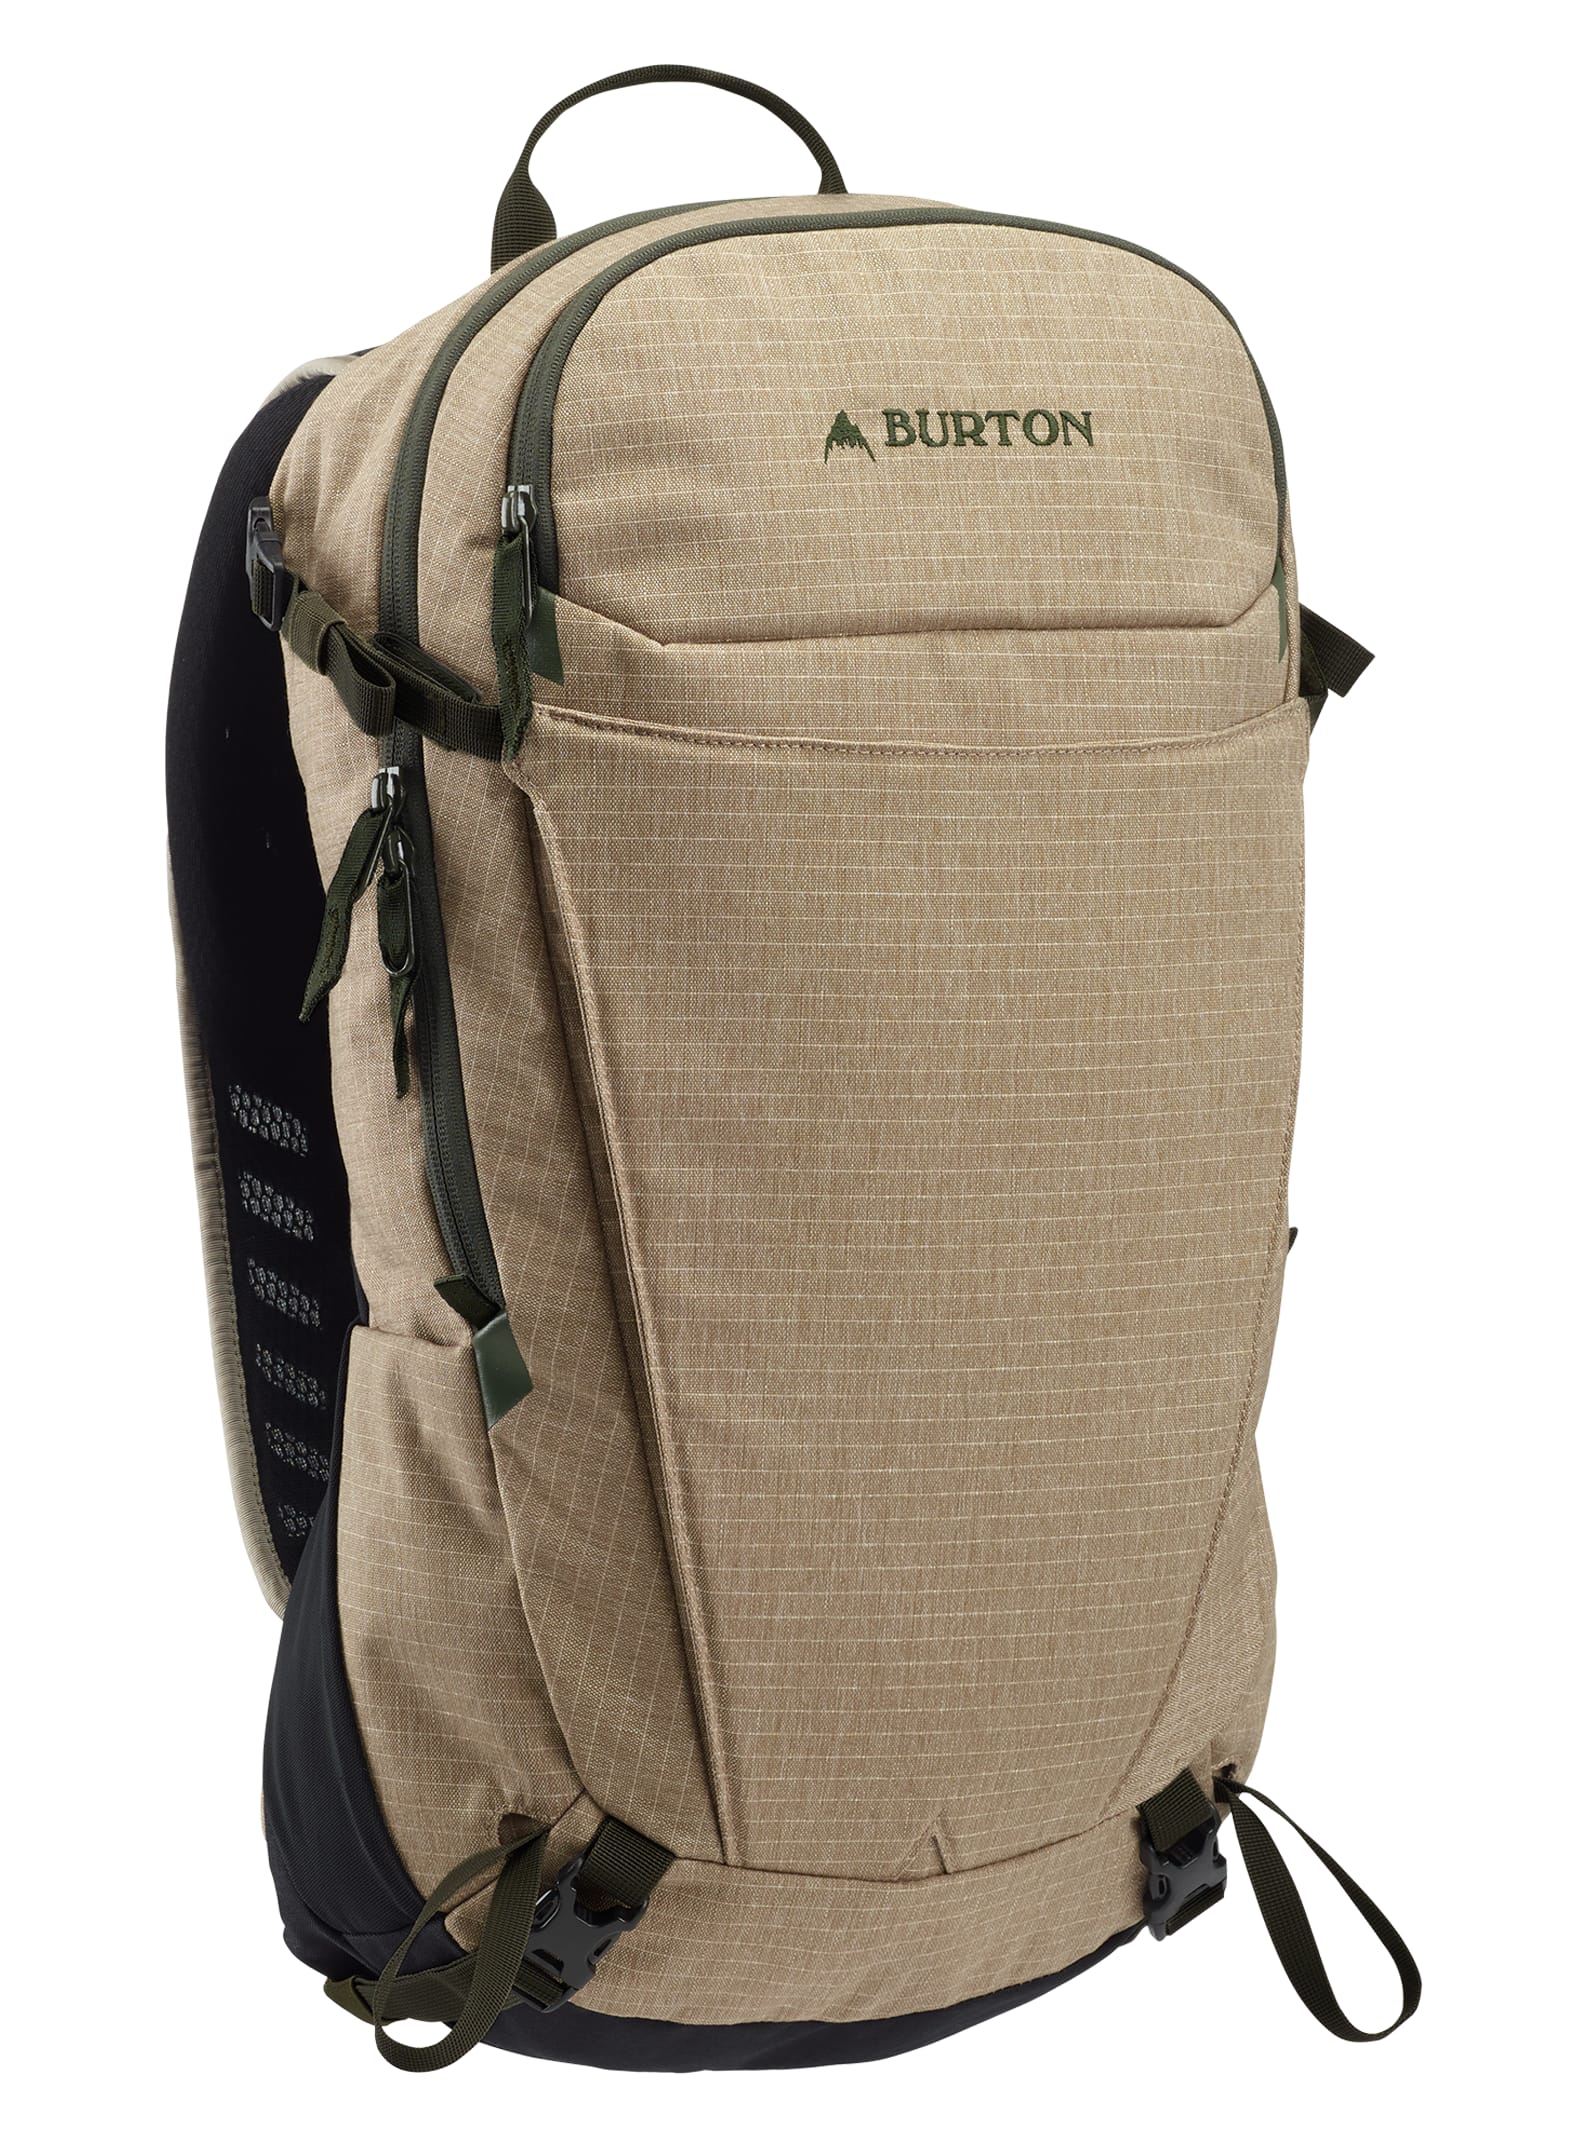 Burton Snowboard Bag Size Chart